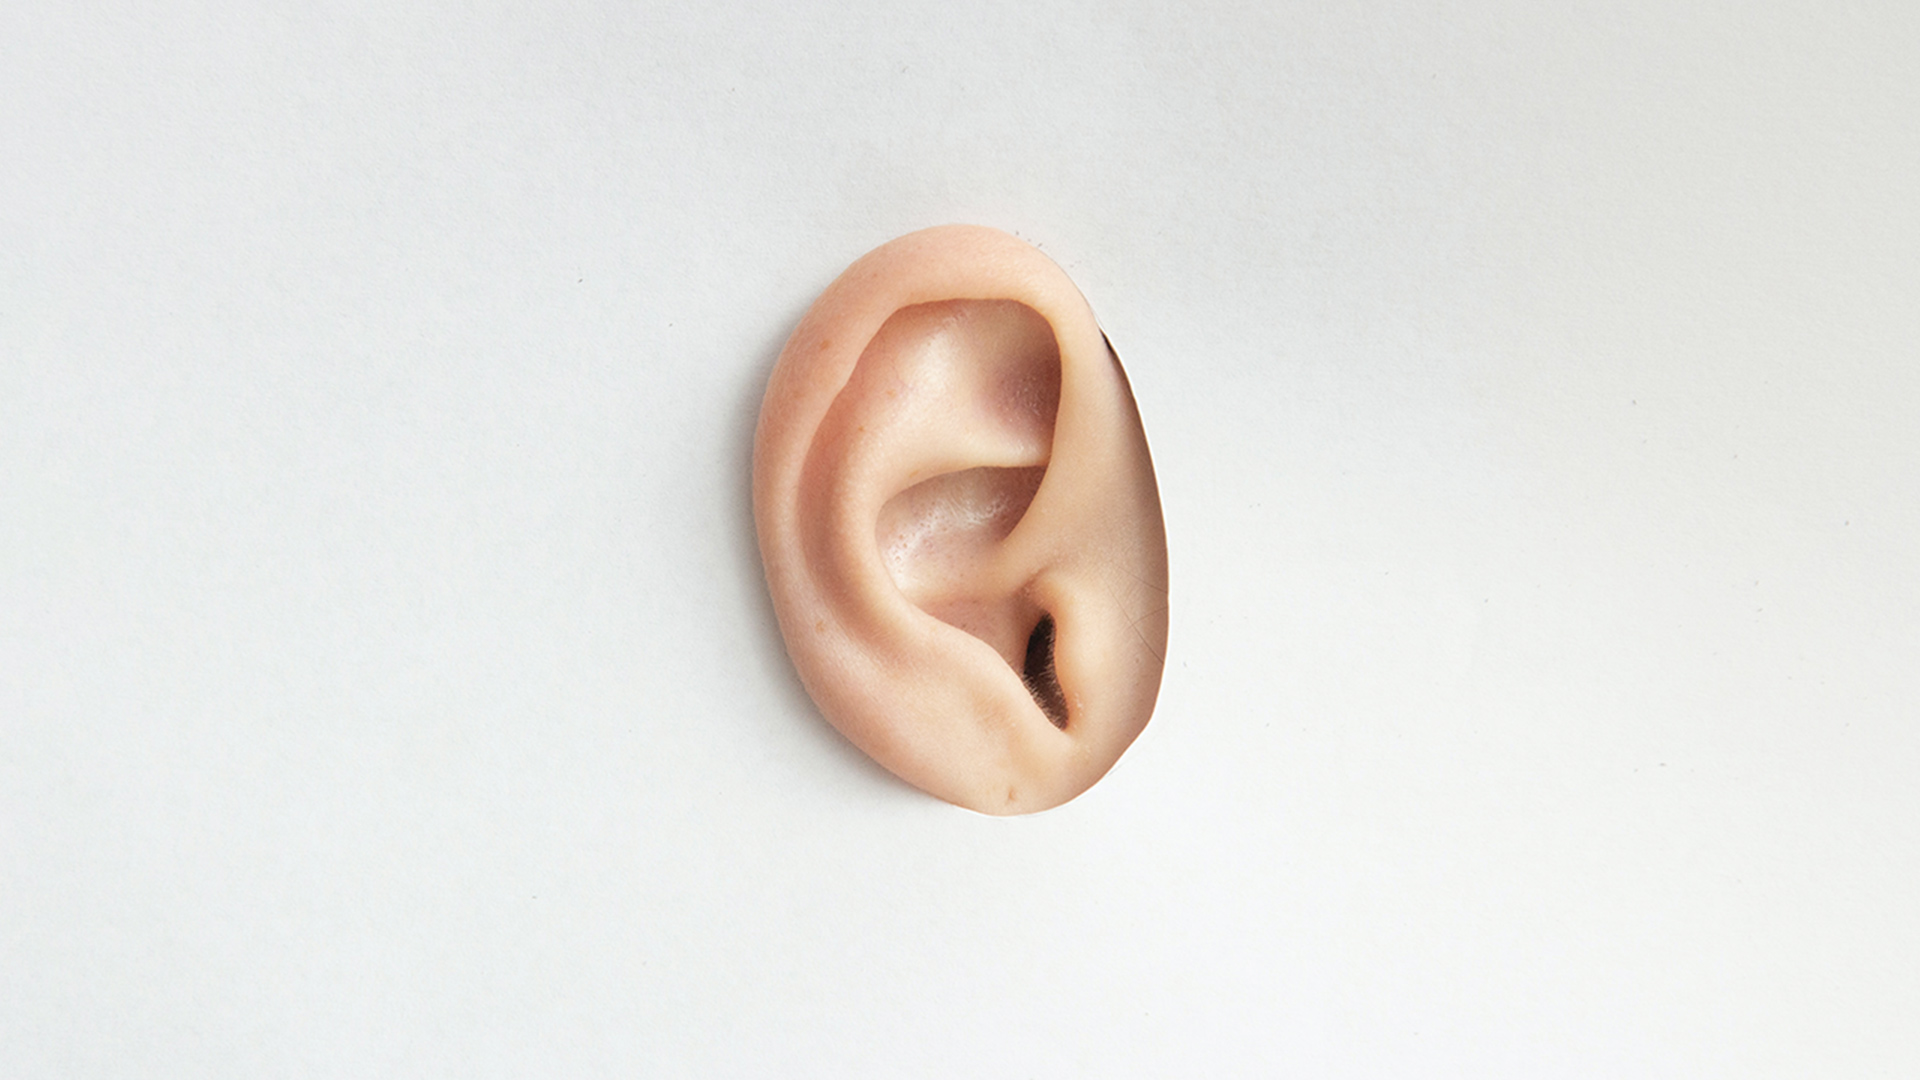 Ear listening through a cardboard hole